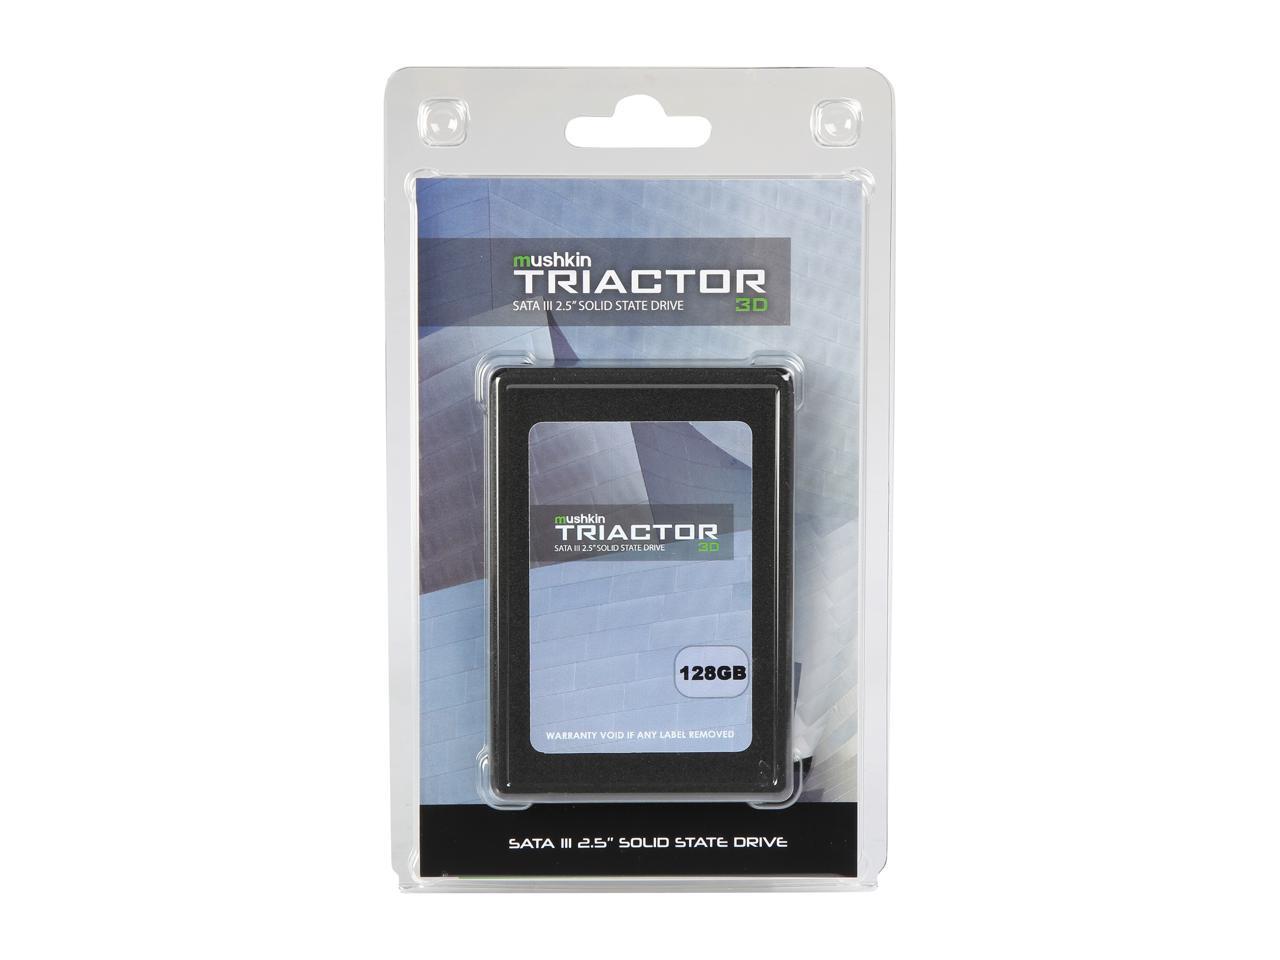 Mushkin TRIACTOR 3DL 2.5" 128GB SATA III 3D TLC Internal Solid State Drive (SSD) MKNSSDTR128GB-3DL